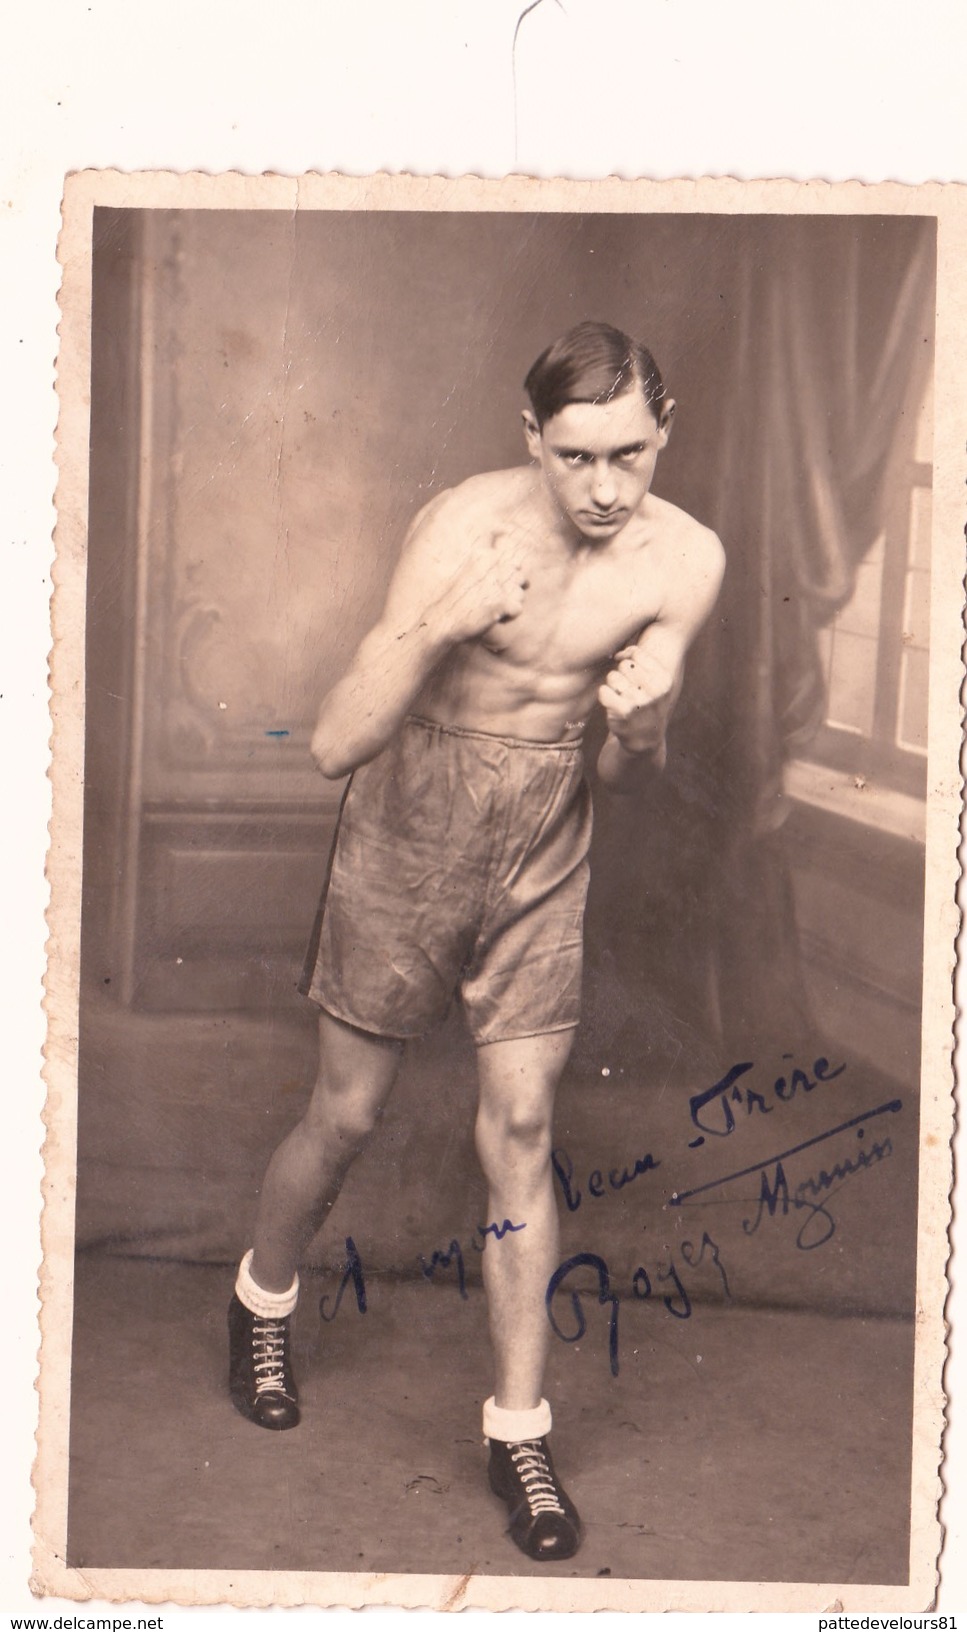 Photo 8,5 X 13,5 Sport Boxe Boxeur Autographe Original Signature Réelle Dédicace Autograph Roger MOUNIN - Autógrafos